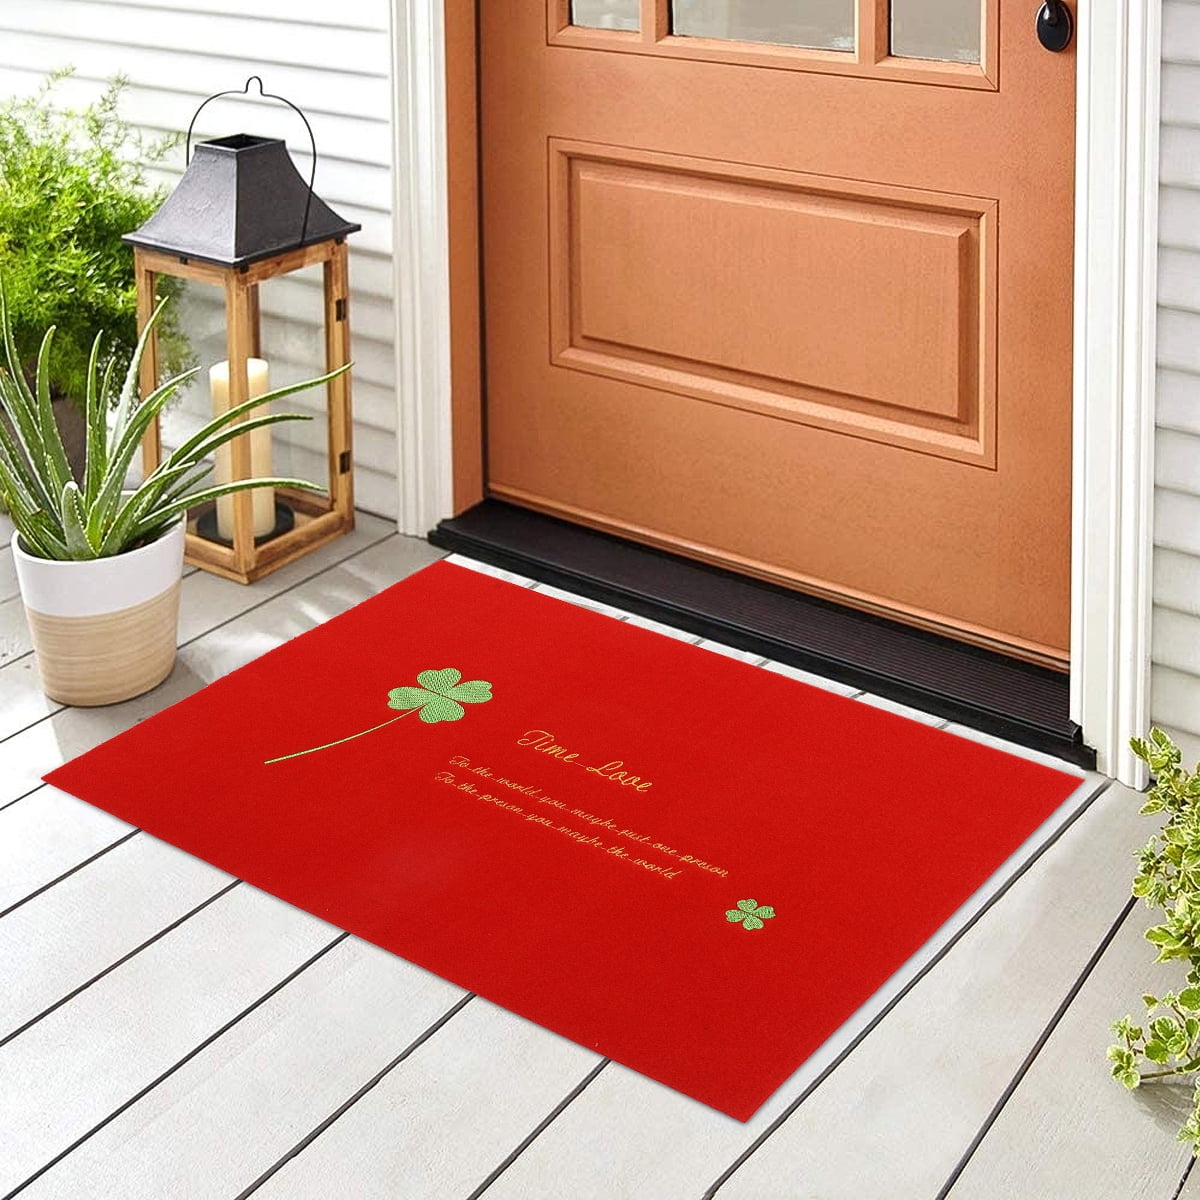 Details about   New Natural Coir Non Slip Welcome Floor Entrance Door Mat Indoor Outdoor Doormat 